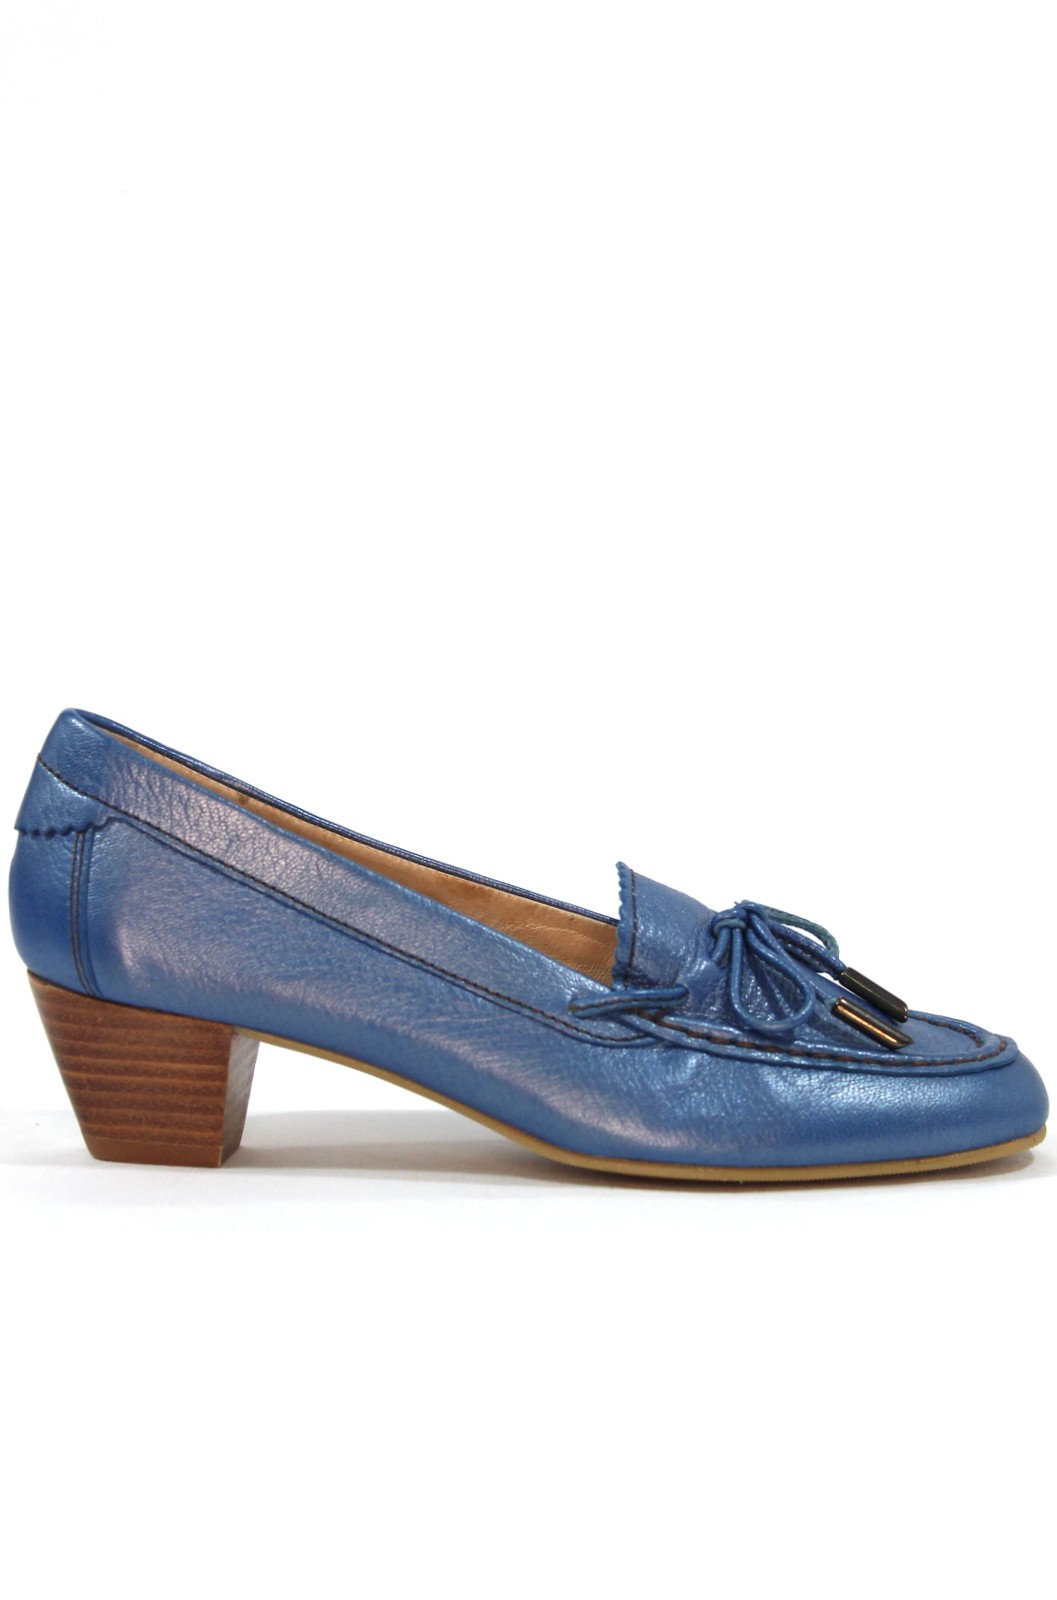 LOSAL - Zapato tipo mocasín con tacón 4 cm. Piel suave. Azul jeams. Hecho mano. LOSAL| Calzados Losada